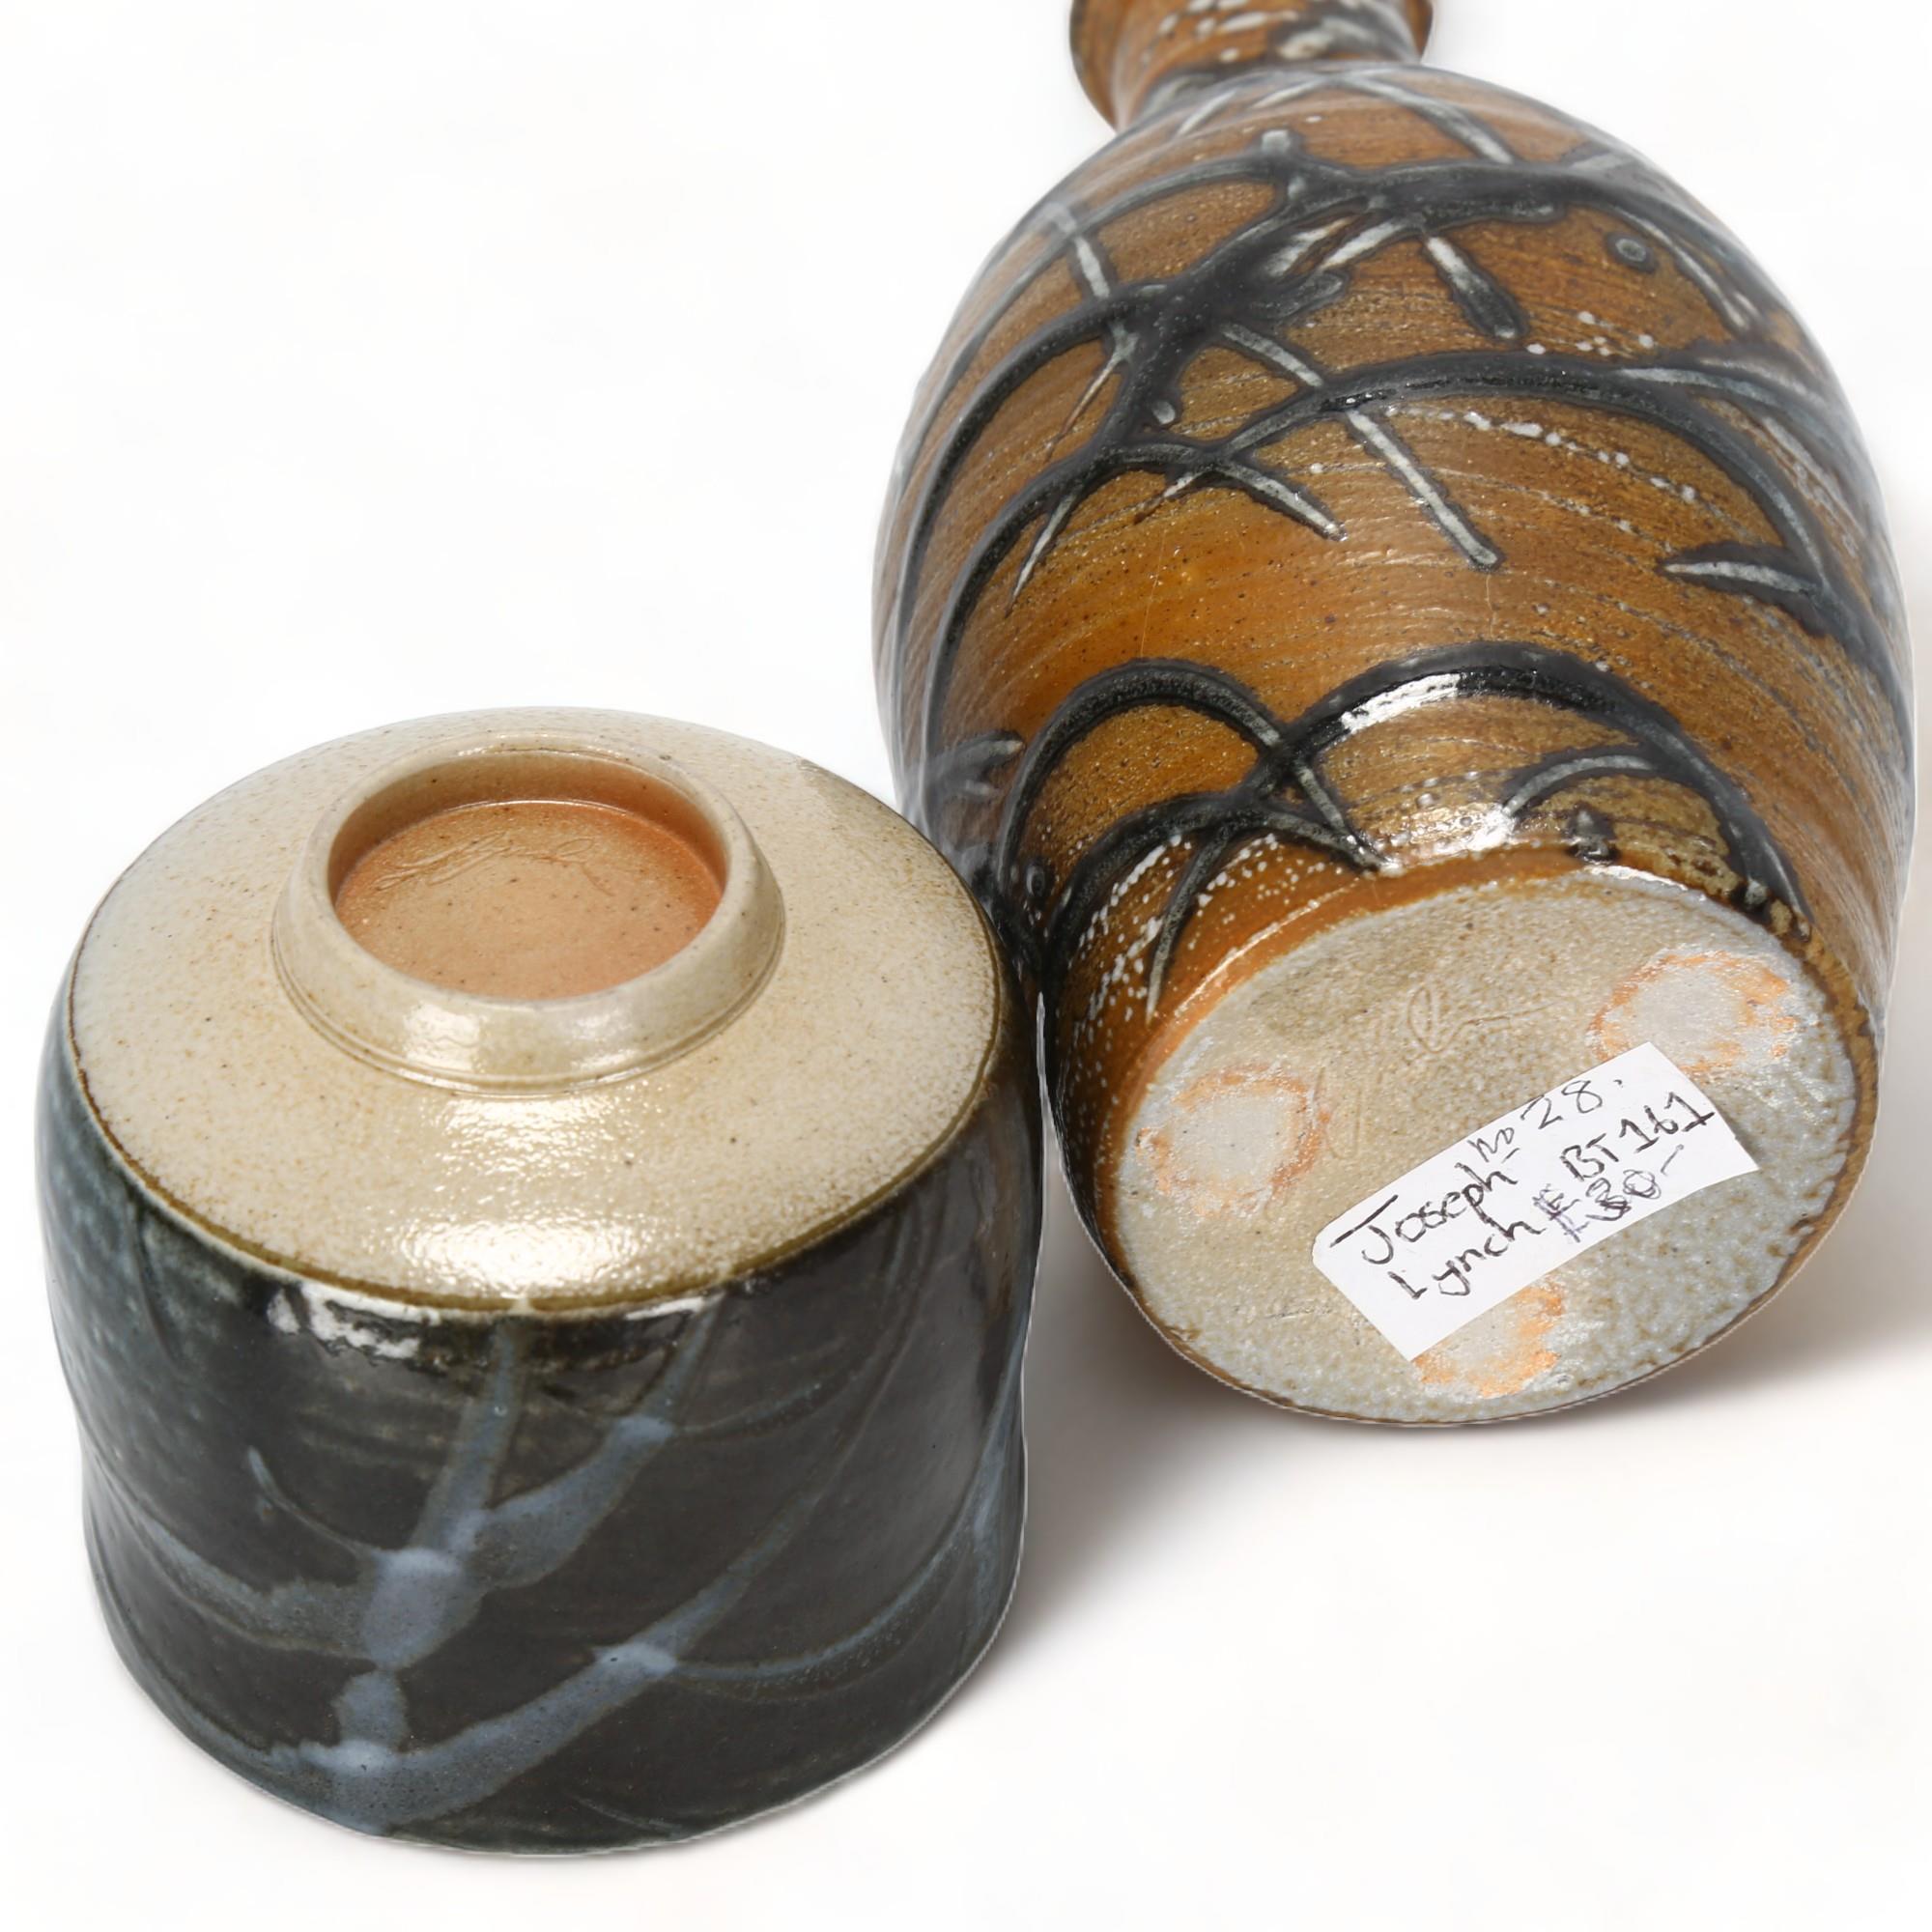 JOSEPH LYNCH, British, a stoneware bottle vase and teabowl, both soda glazed and signed to base, - Image 2 of 3